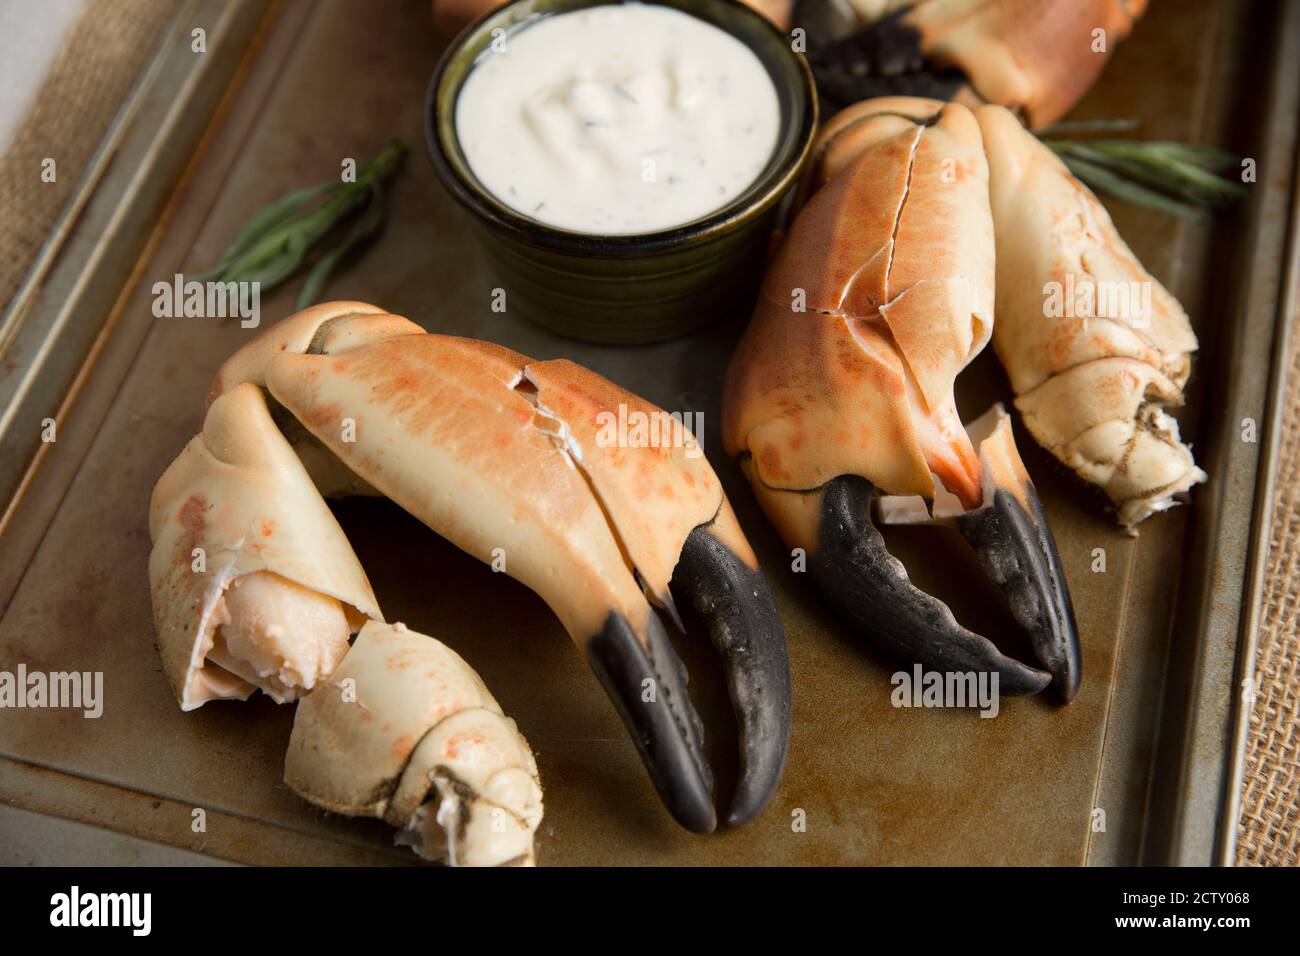 Pinces de crabe bouillies d'un crabe brun, cancer pagurus, qui ont été servies avec une mayonnaise à l'ail, à l'estragon et au citron. Dorset Angleterre GB Banque D'Images